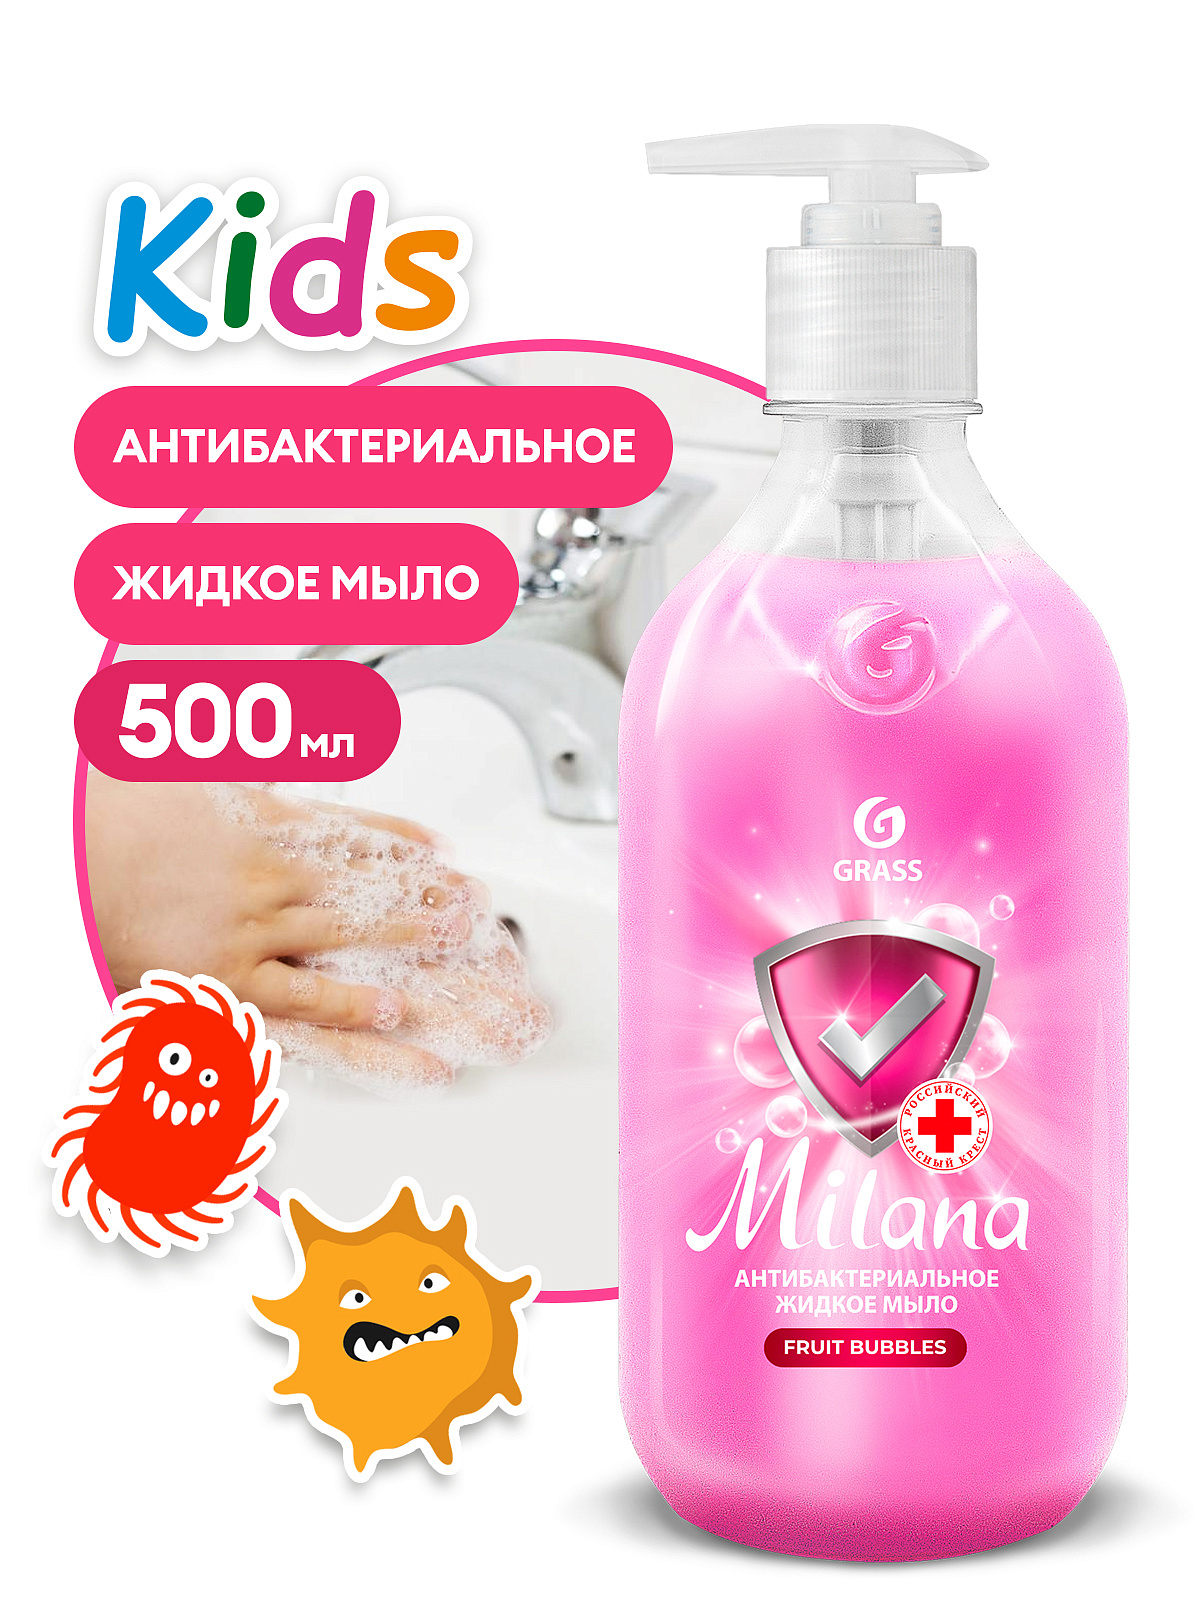 0,5 Жидкое мыло «Milana Kids антибактериальное» Fruit bubbles (флакон 500мл)